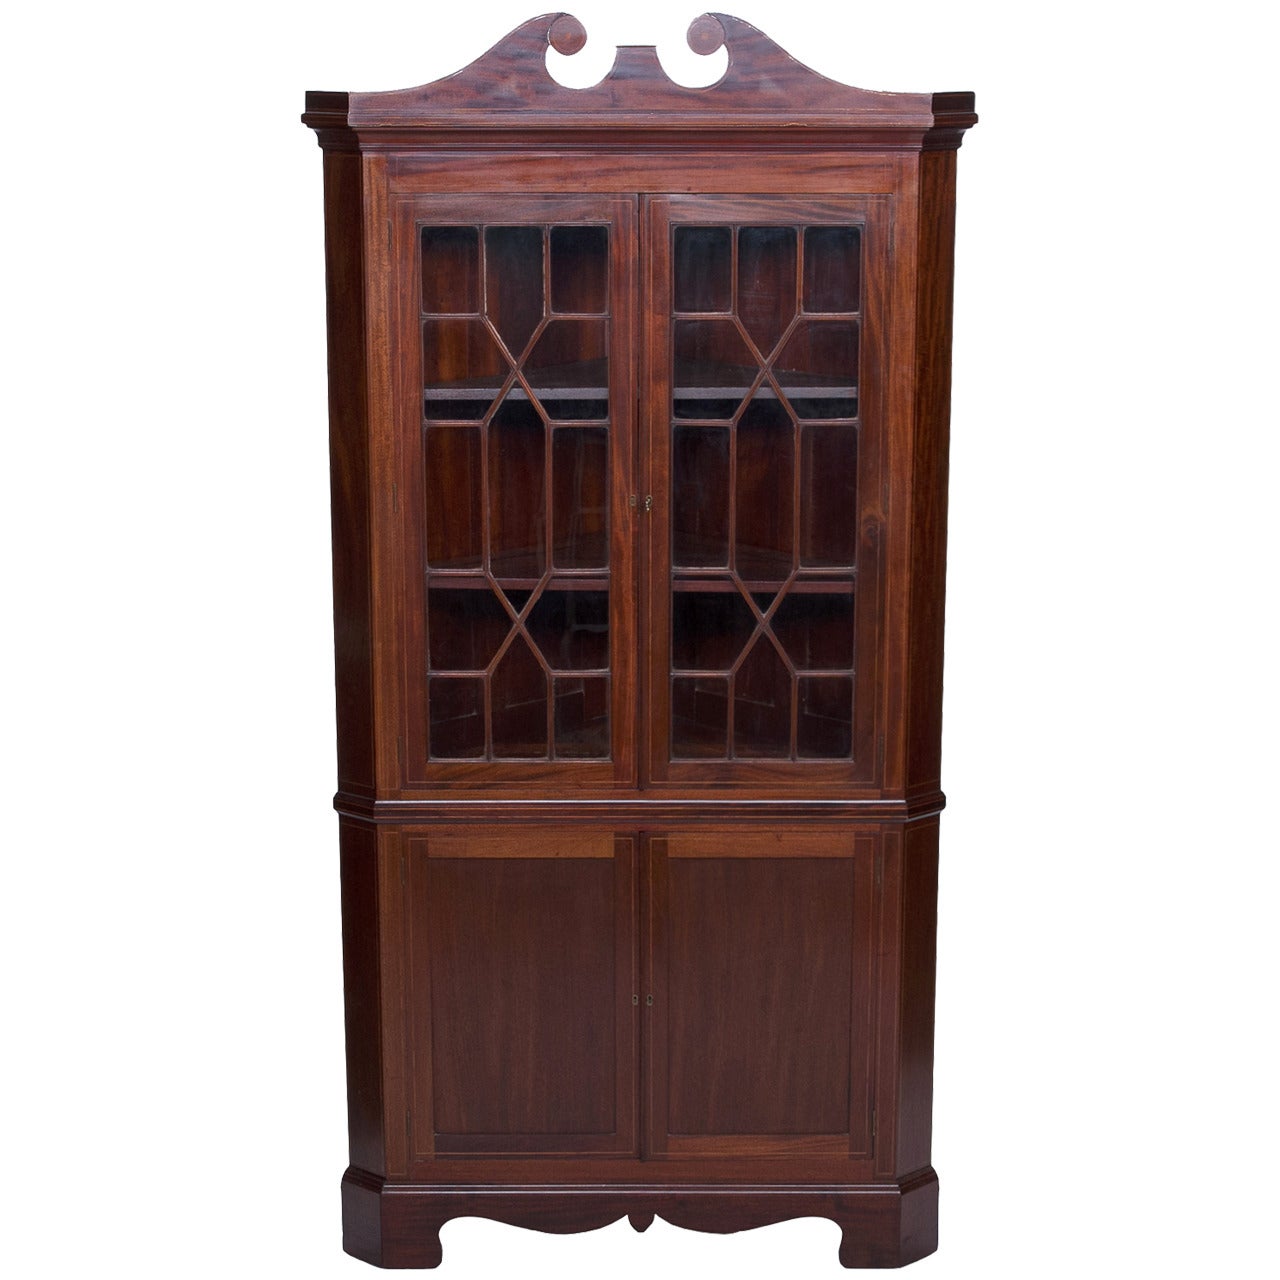 Sheraton Style Mahogany Corner Cabinet with Inlay